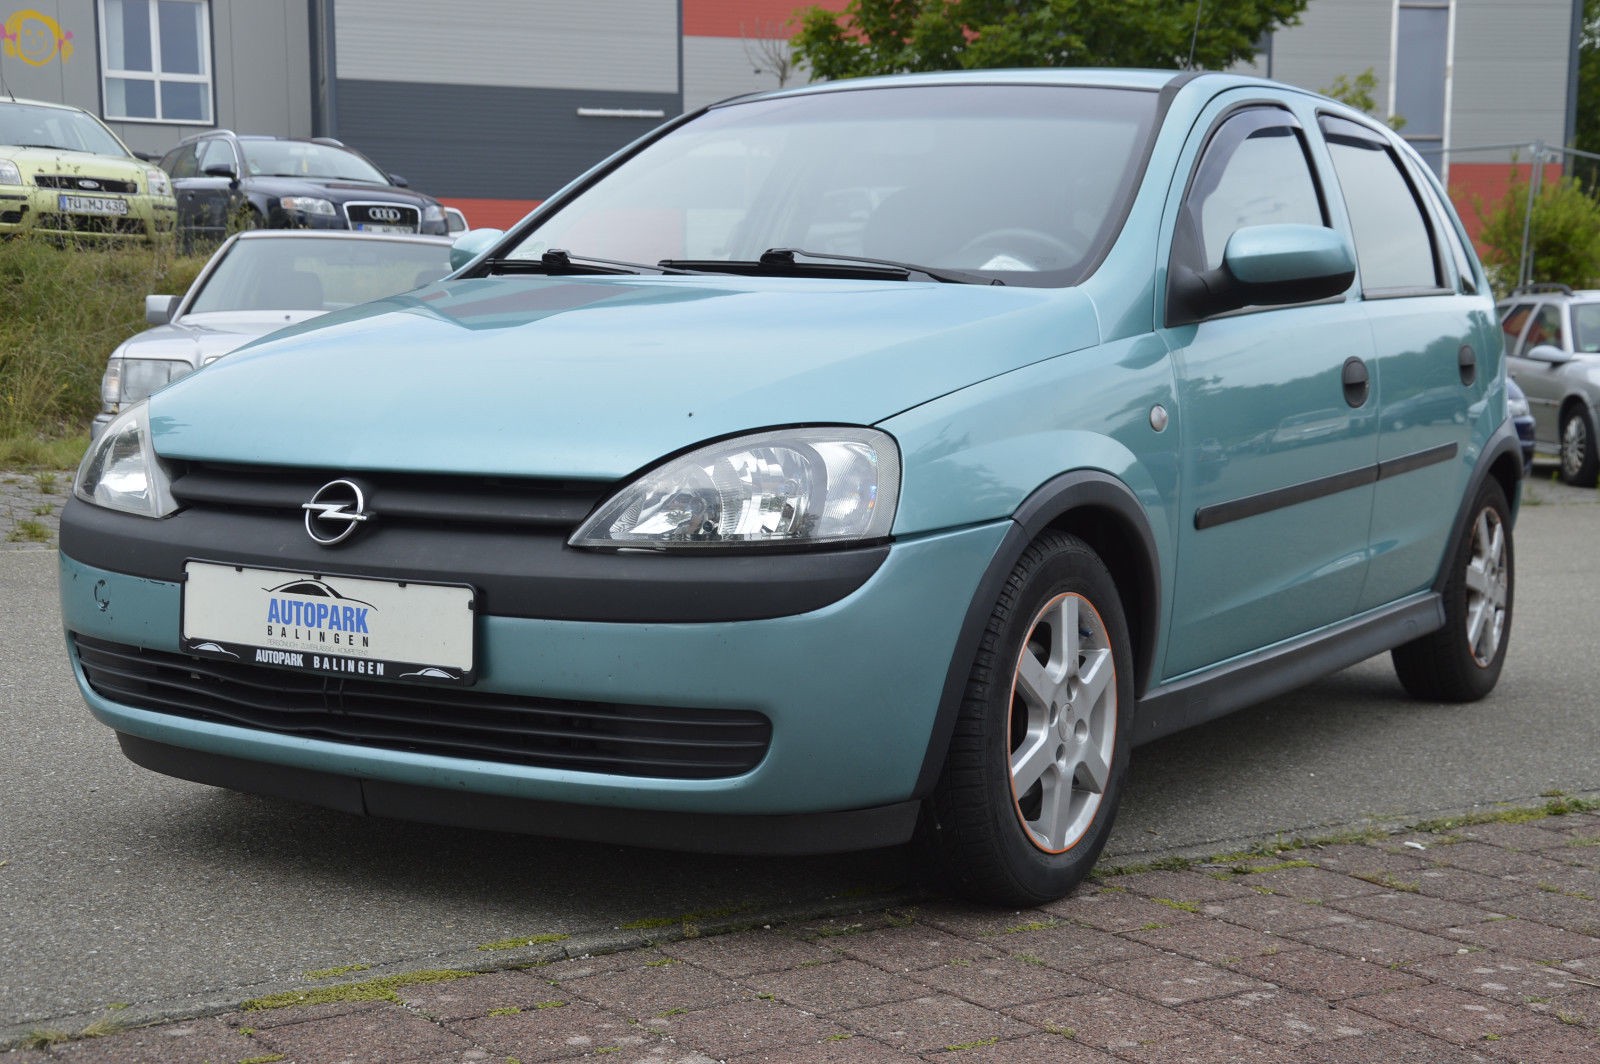 Opel Corsa C Edition gebraucht kaufen in Balingen Preis 2400 eur - Int.Nr.:  1213 VERKAUFT